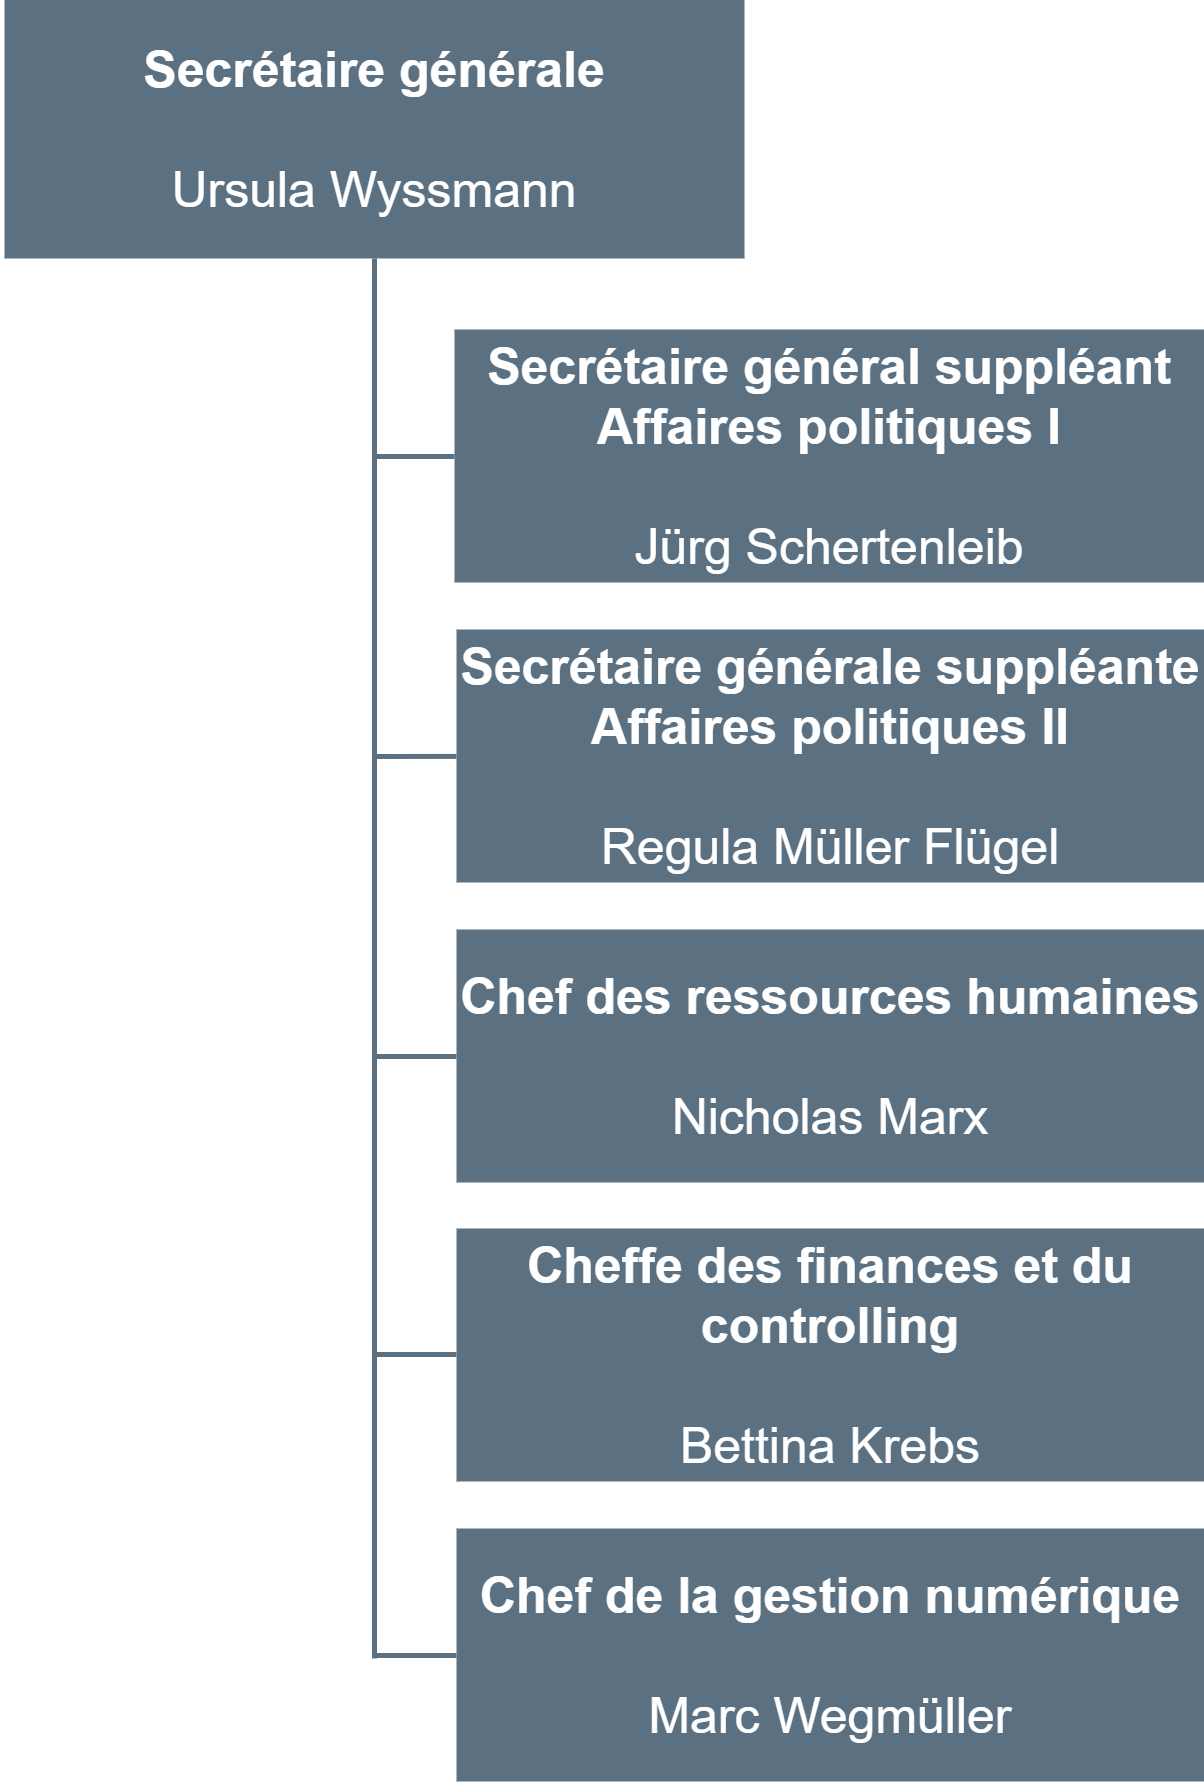 Organigramme du Secrétariat général de la Direction de l'intérieur et de la justice